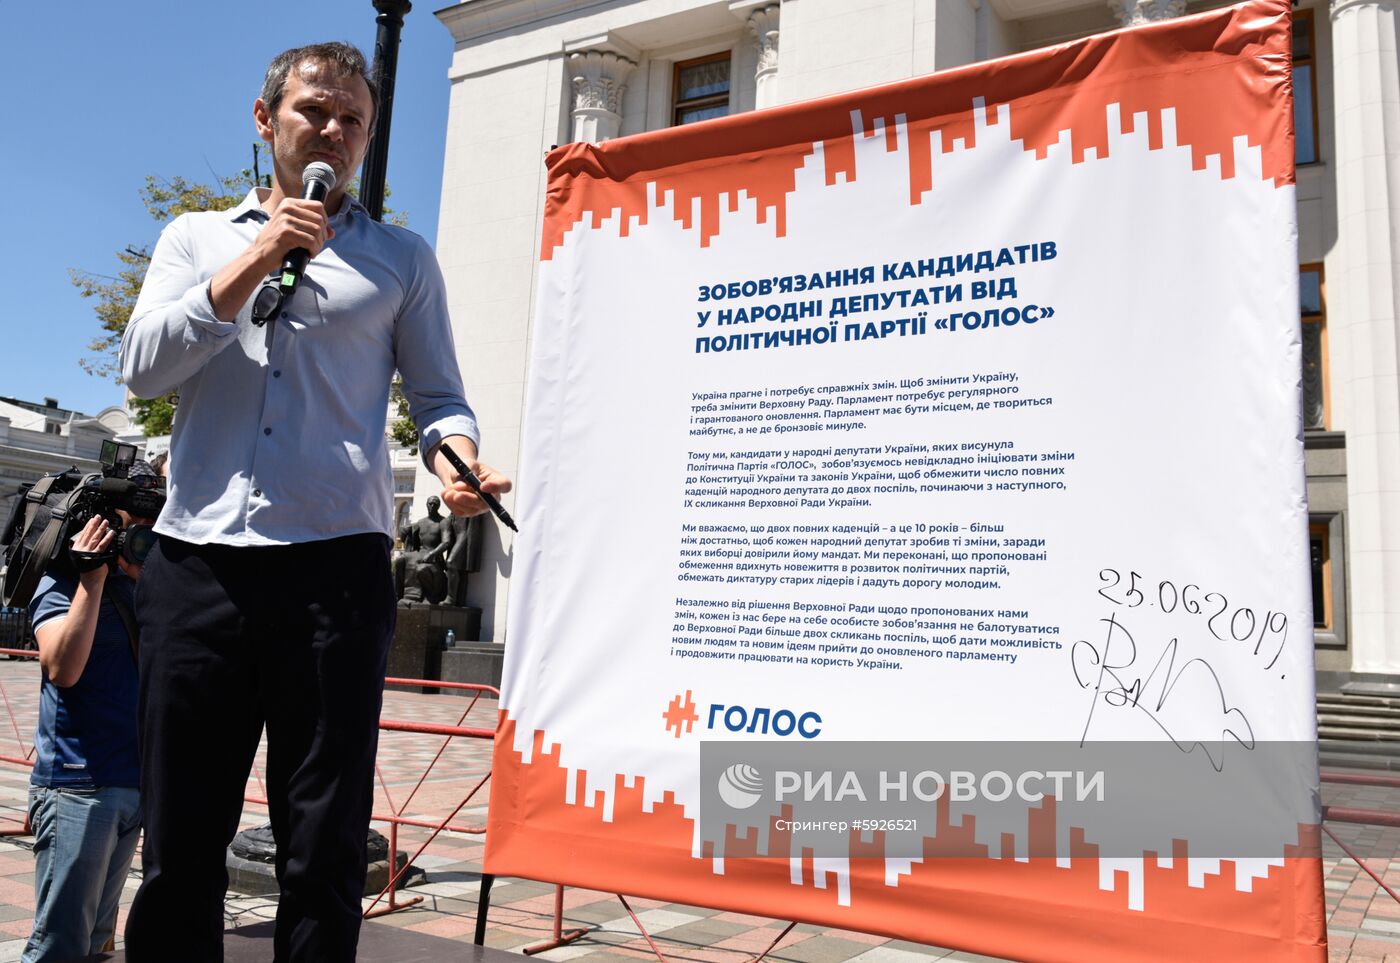 Акция сторонников партии "Голос" в Киеве